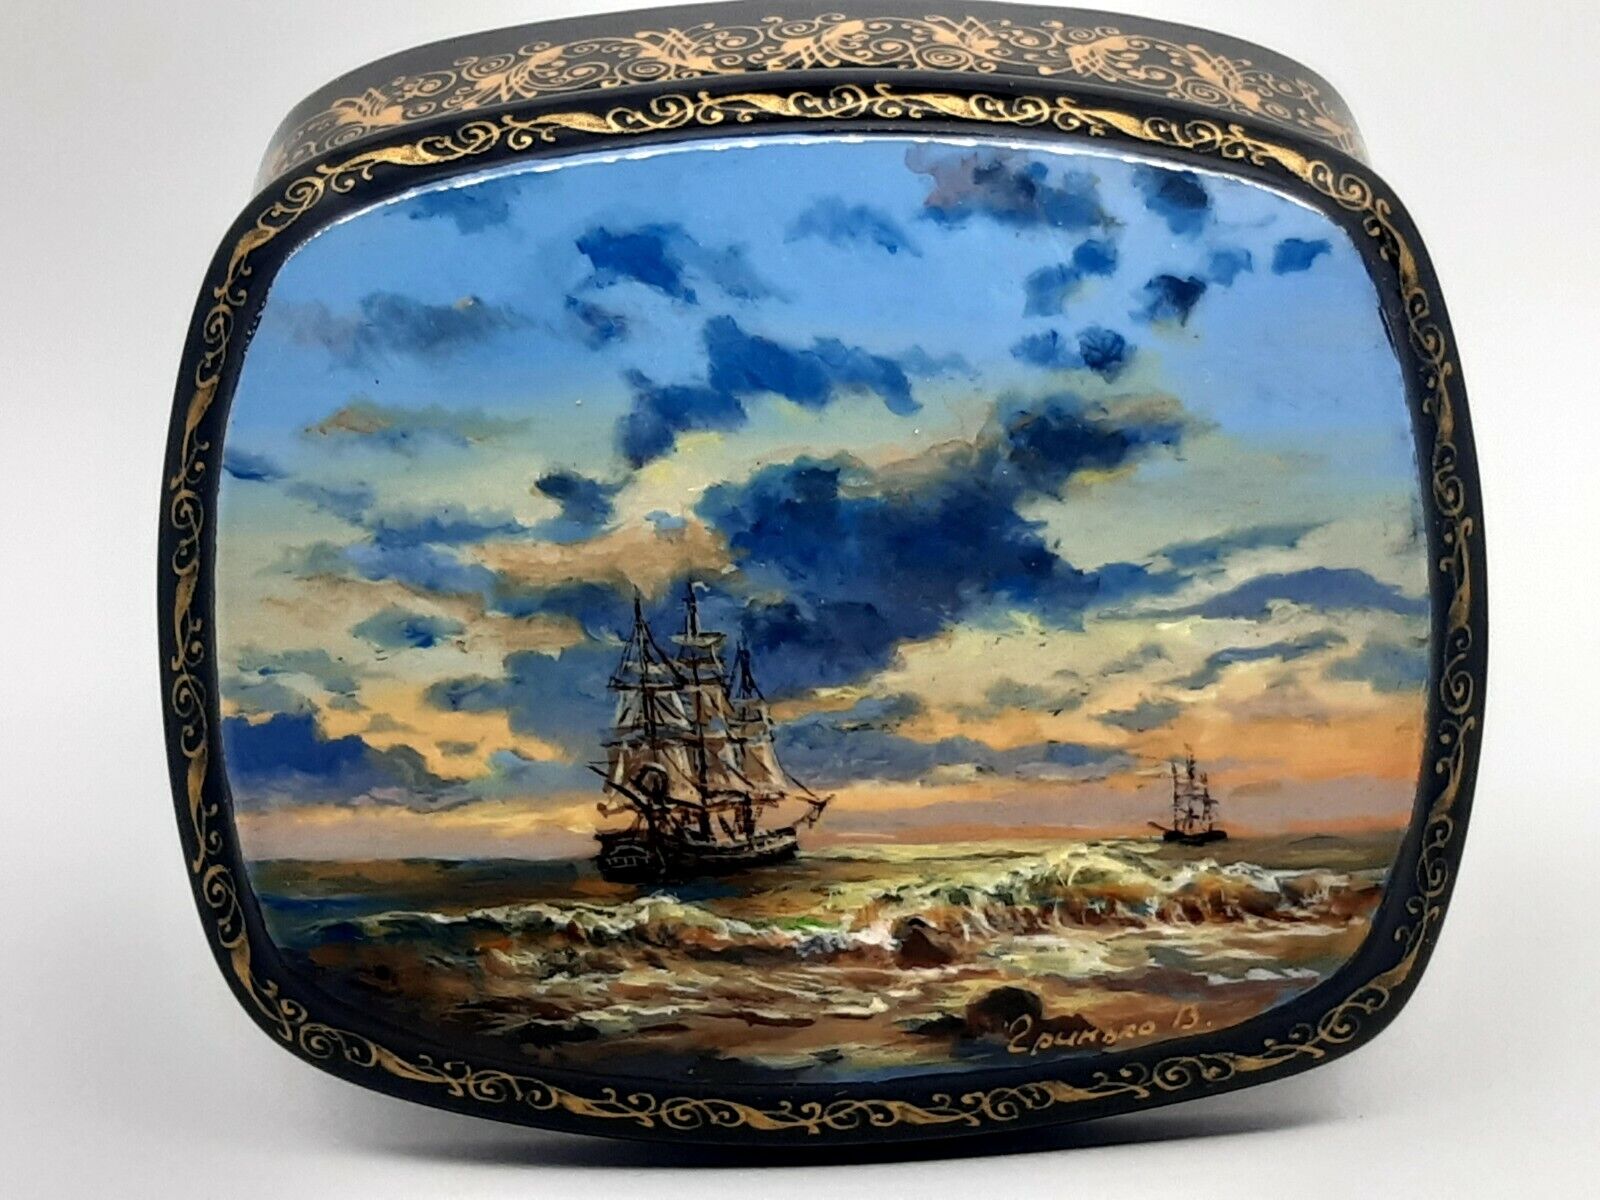 Seascape Ukrainian lacquer miniature box “Ship in the sea” by artist Grinko